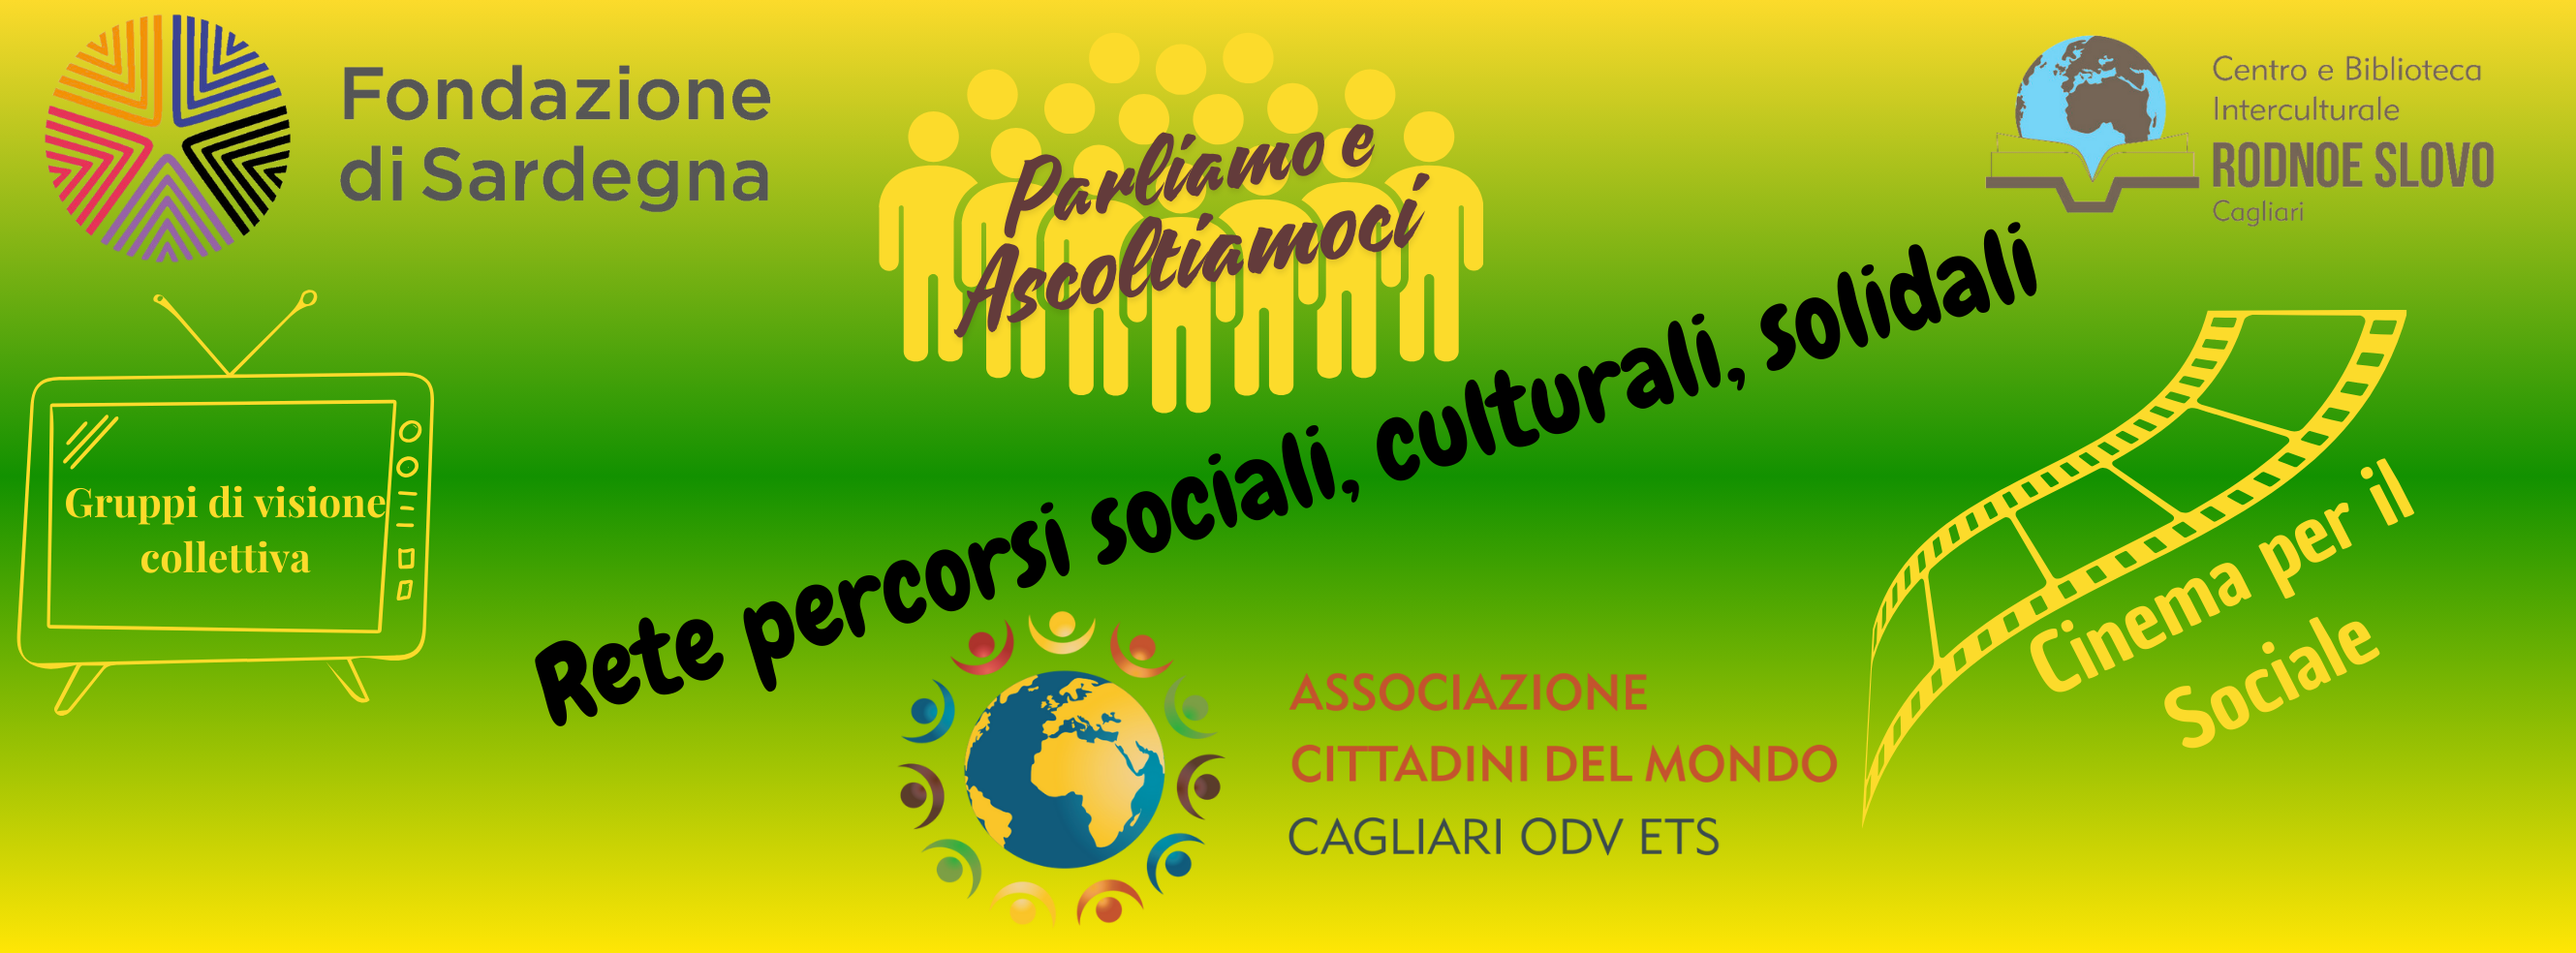 Presentato il nuovo progetto: “Rete per l'inclusione e la valorizzazione delle buone prassi” dell’Associazione Cittadini del Mondo OdV di Cagliari, con un vasto partenariato a livello regionale, nazionale ed internazionale